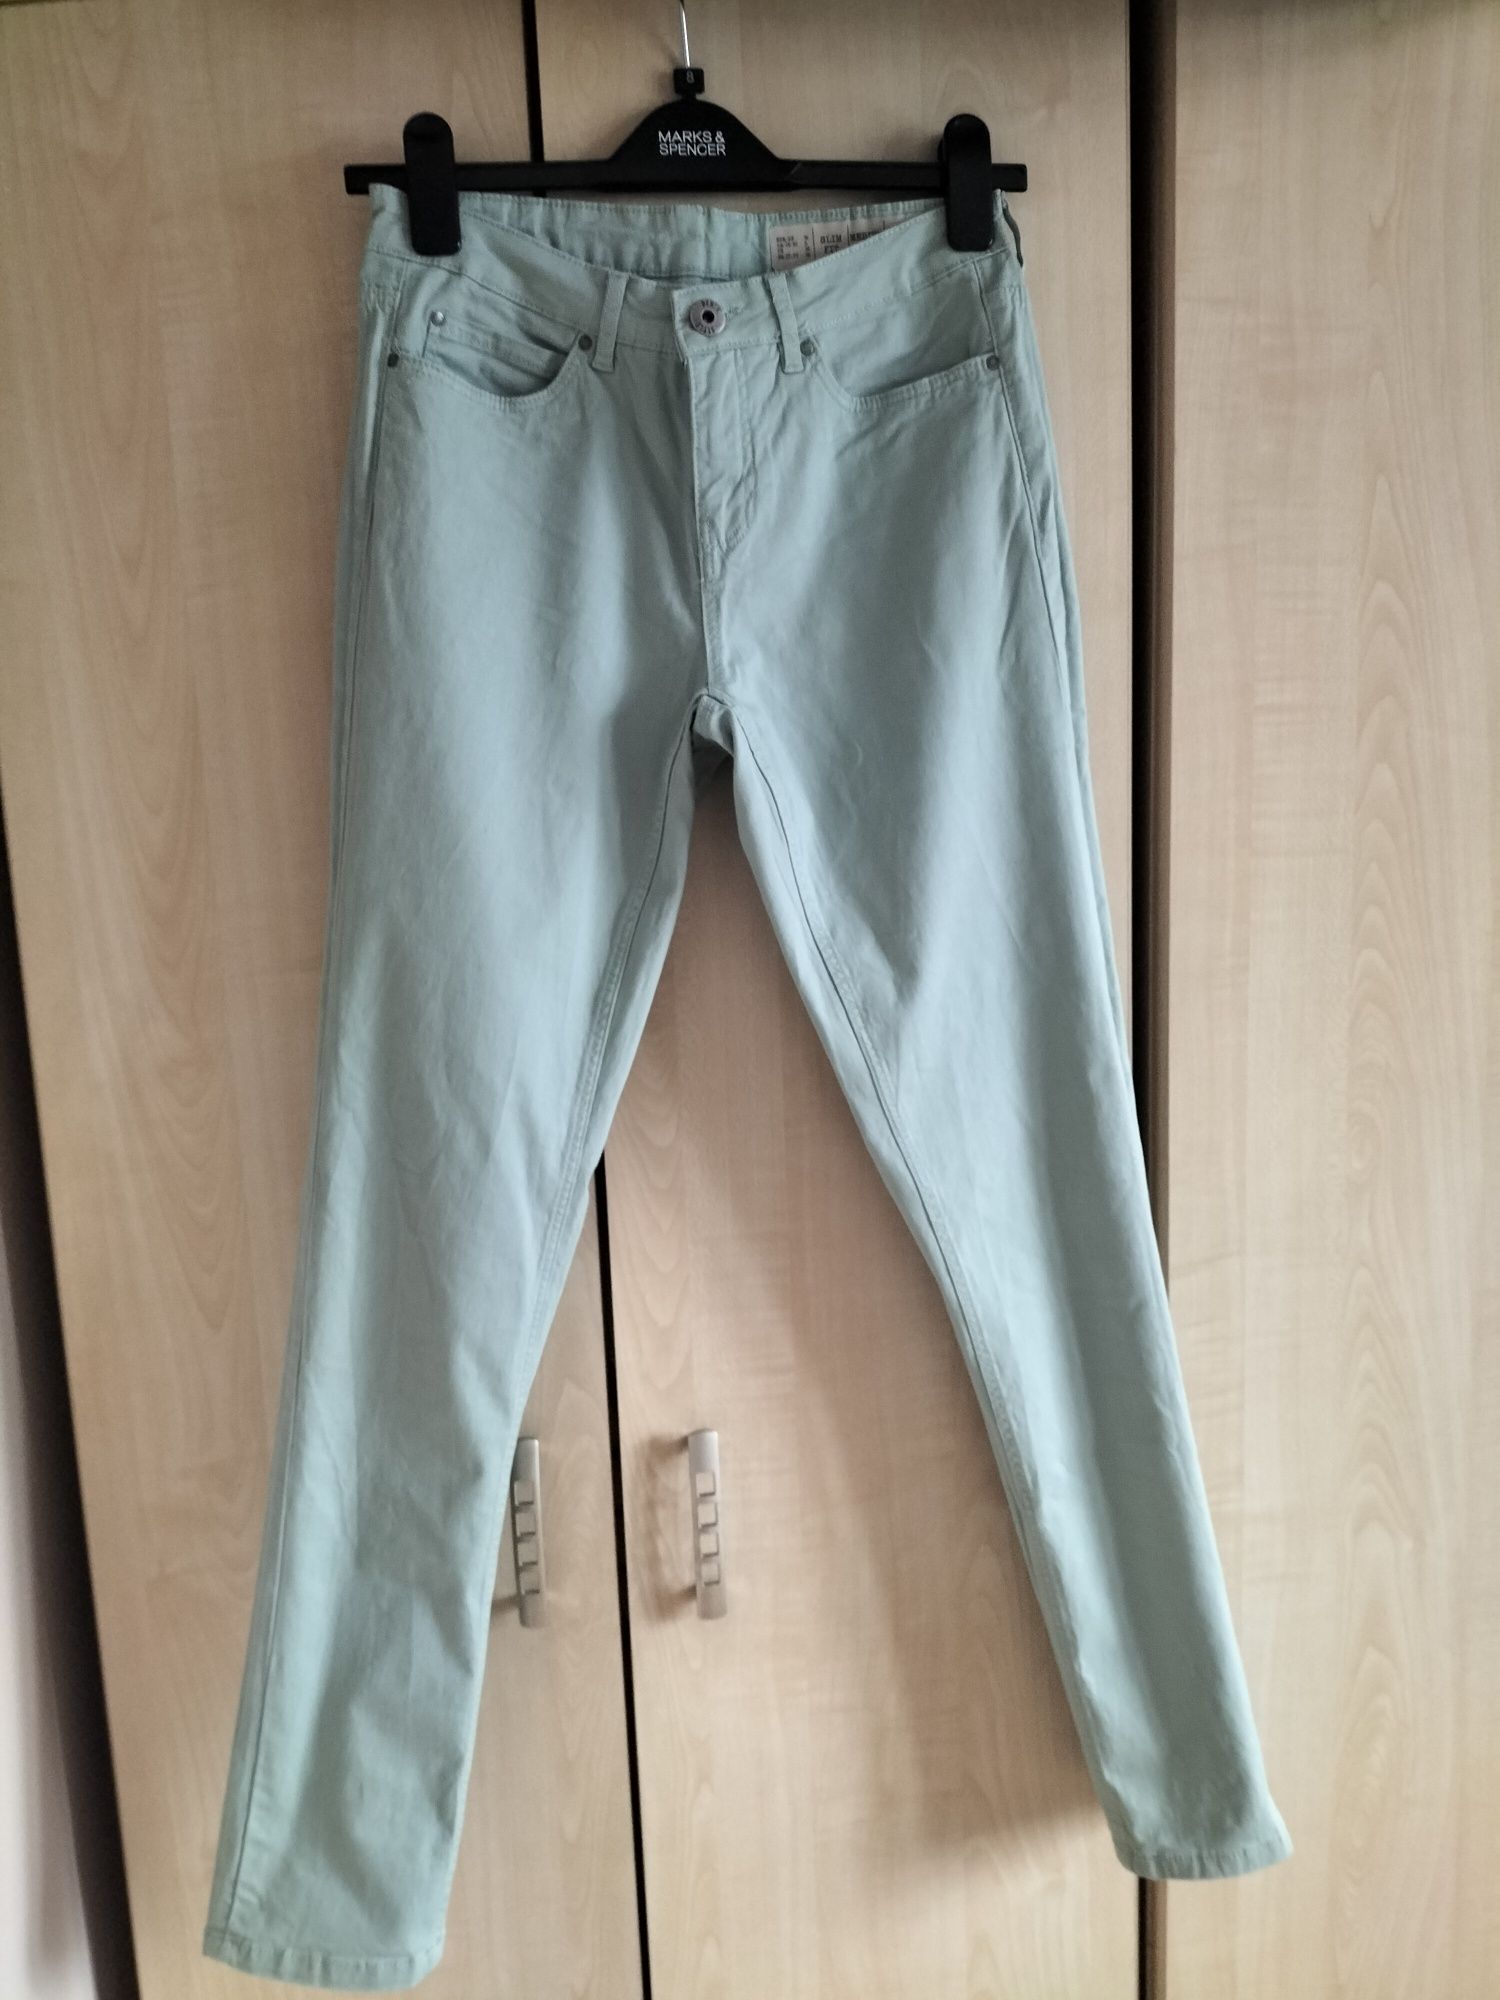 Miętowe jeansy slim fit marki esmara rozmiar 36 stan bardzo dobry.